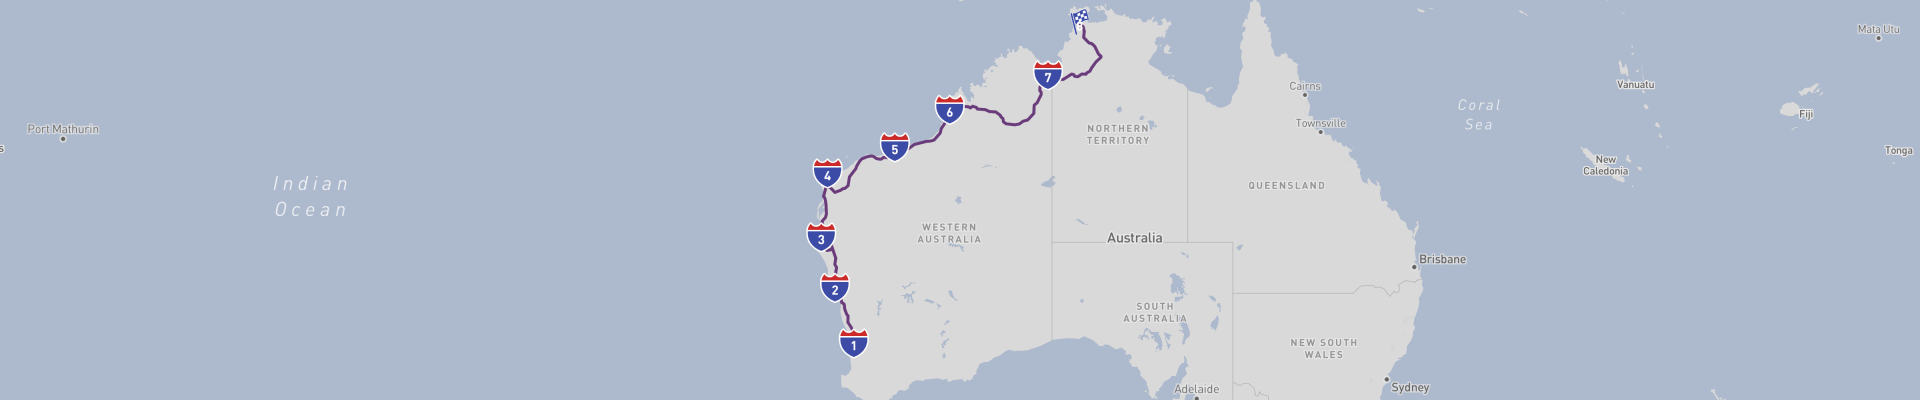 オーストラリア西海岸ドライブ旅行